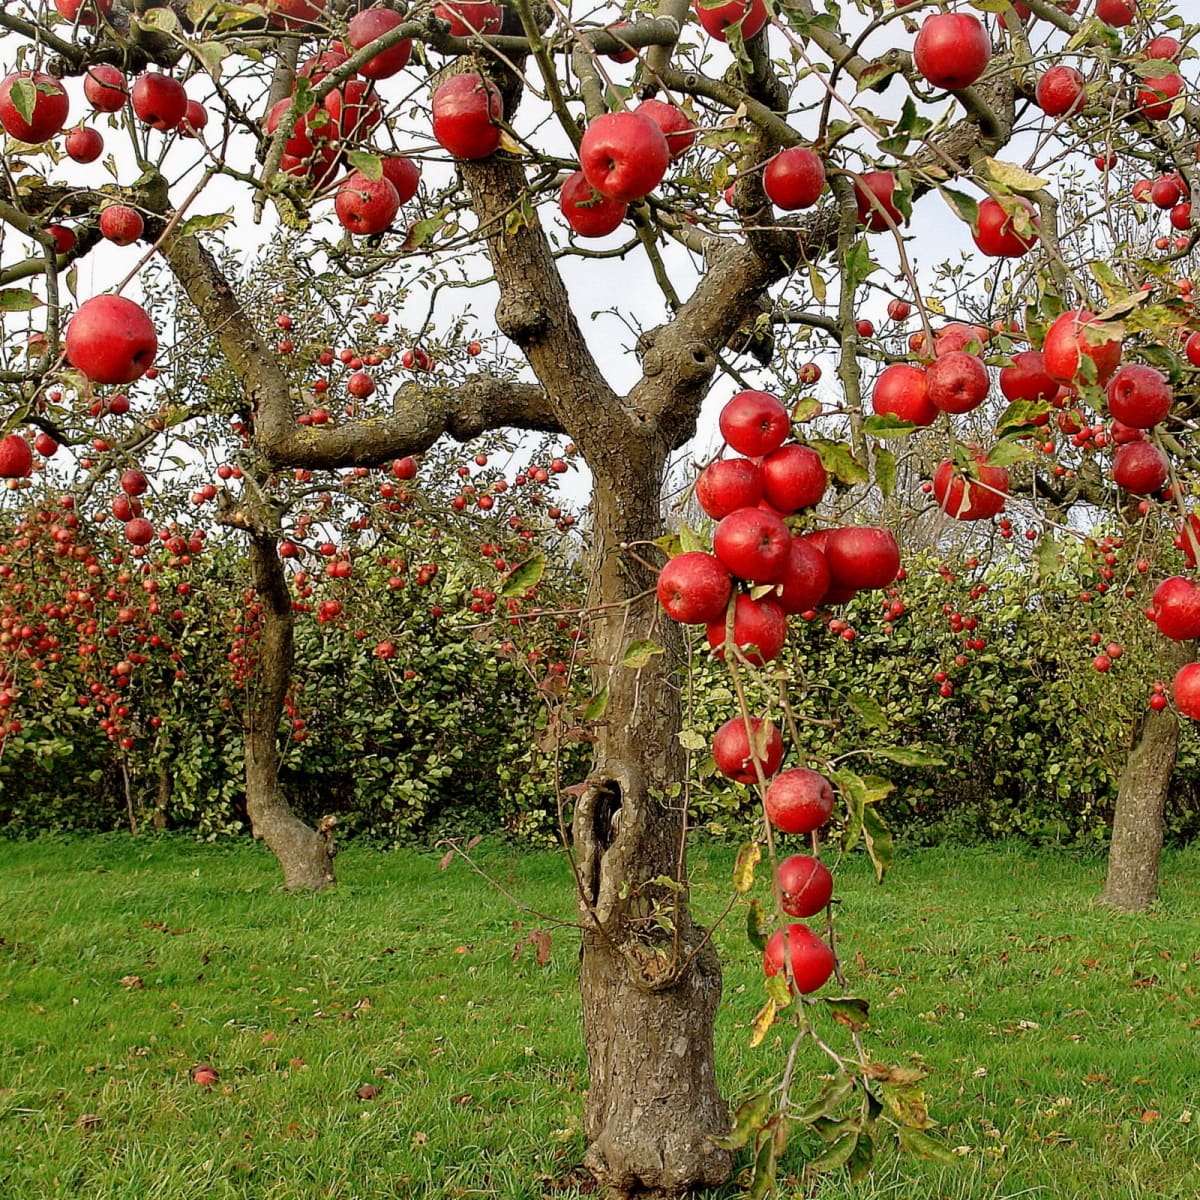 apples growing